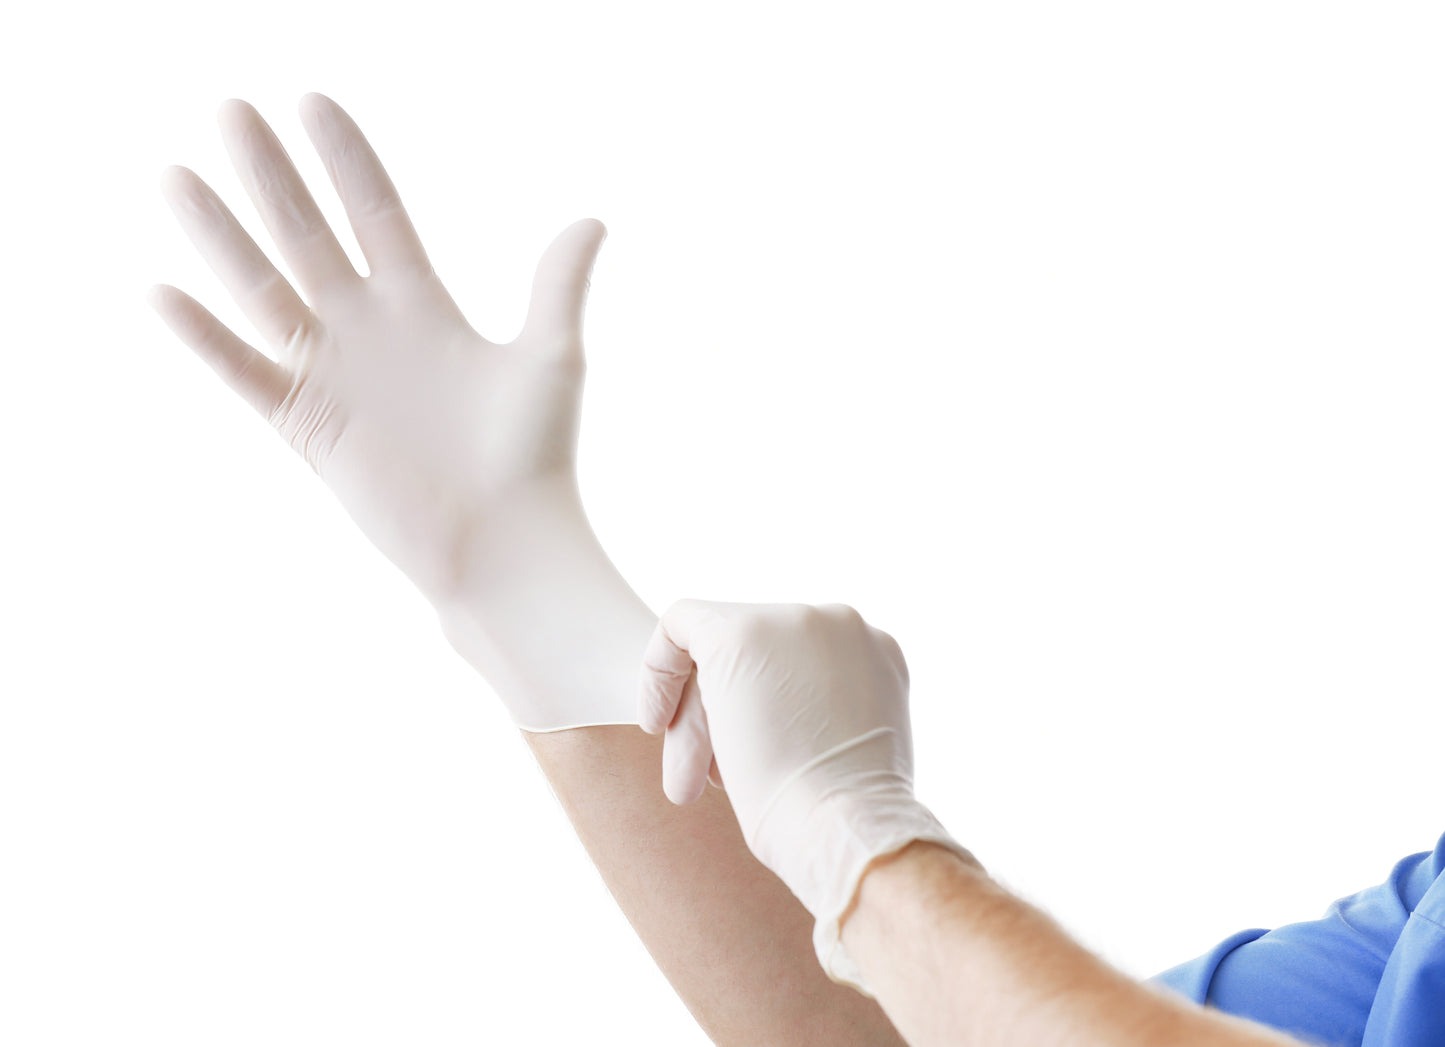 Cách sử dụng và bảo quản găng tay Latex